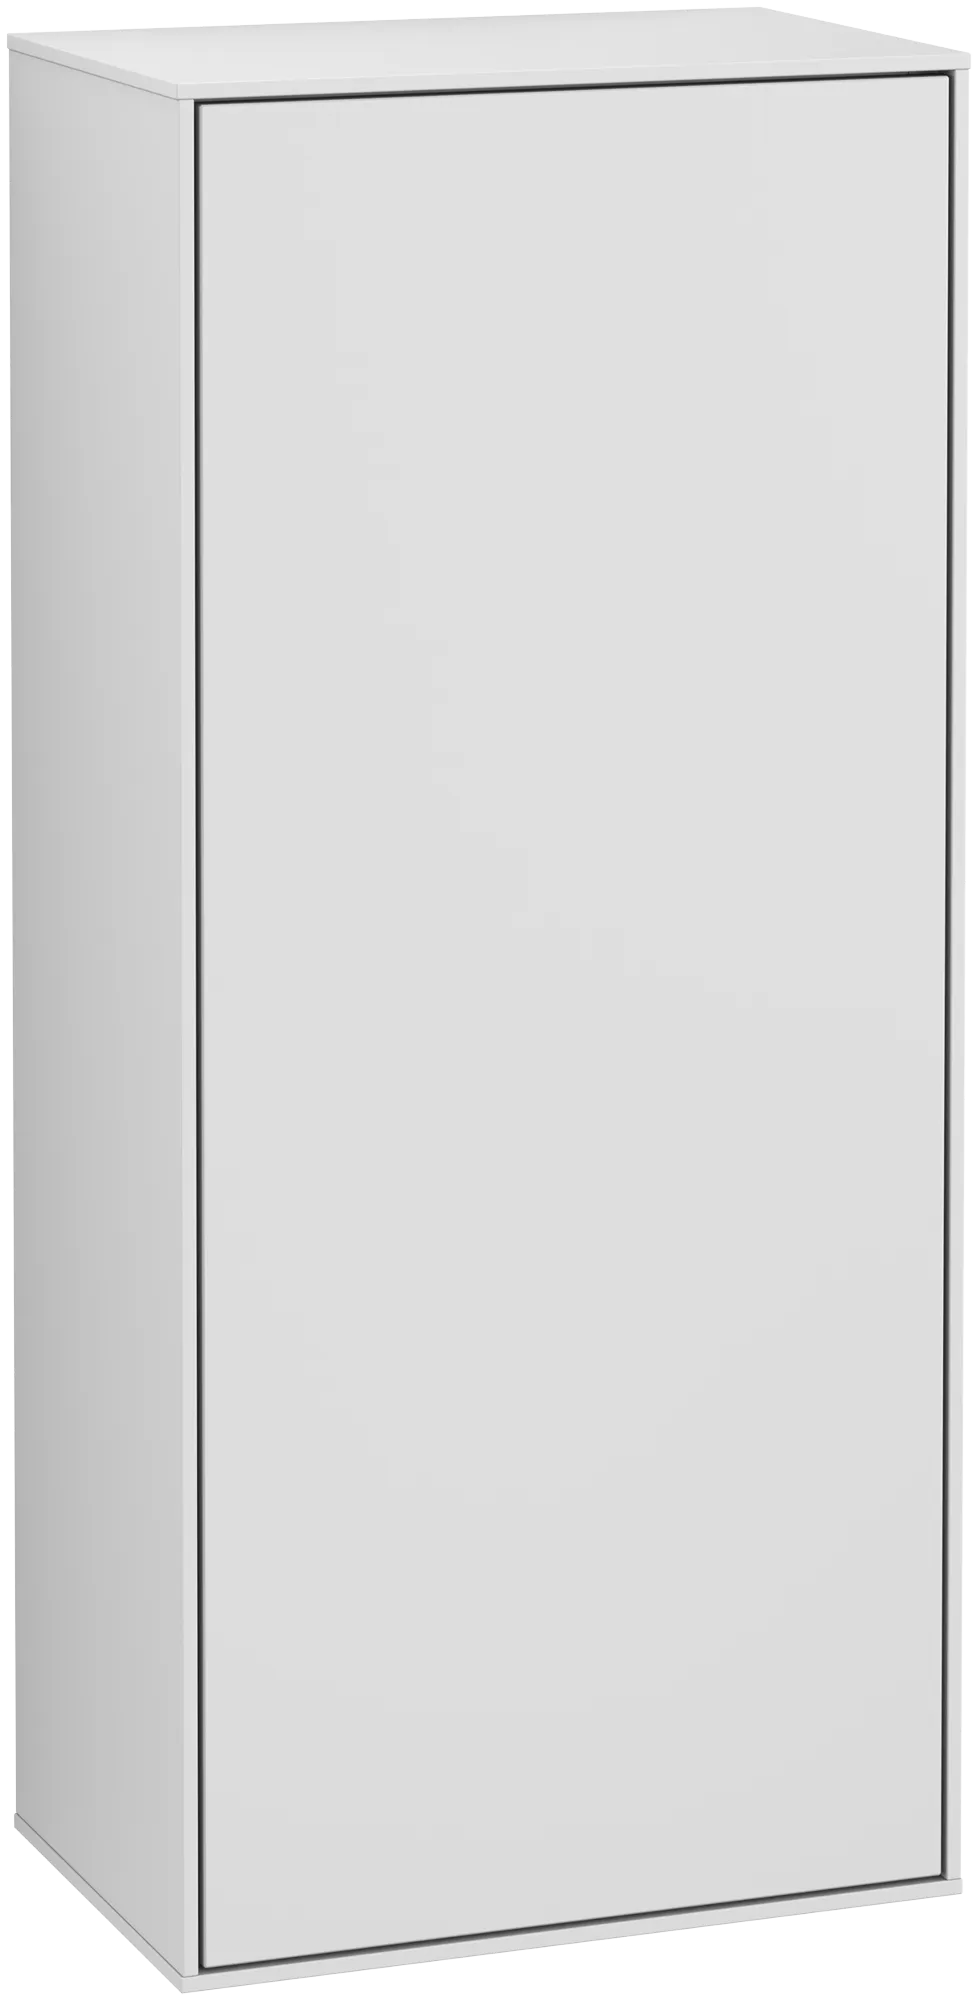 Bild von VILLEROY BOCH Finion Seitenschrank, mit Beleuchtung, 1 Tür, 418 x 936 x 270 mm, White Matt Lacquer #G56000MT